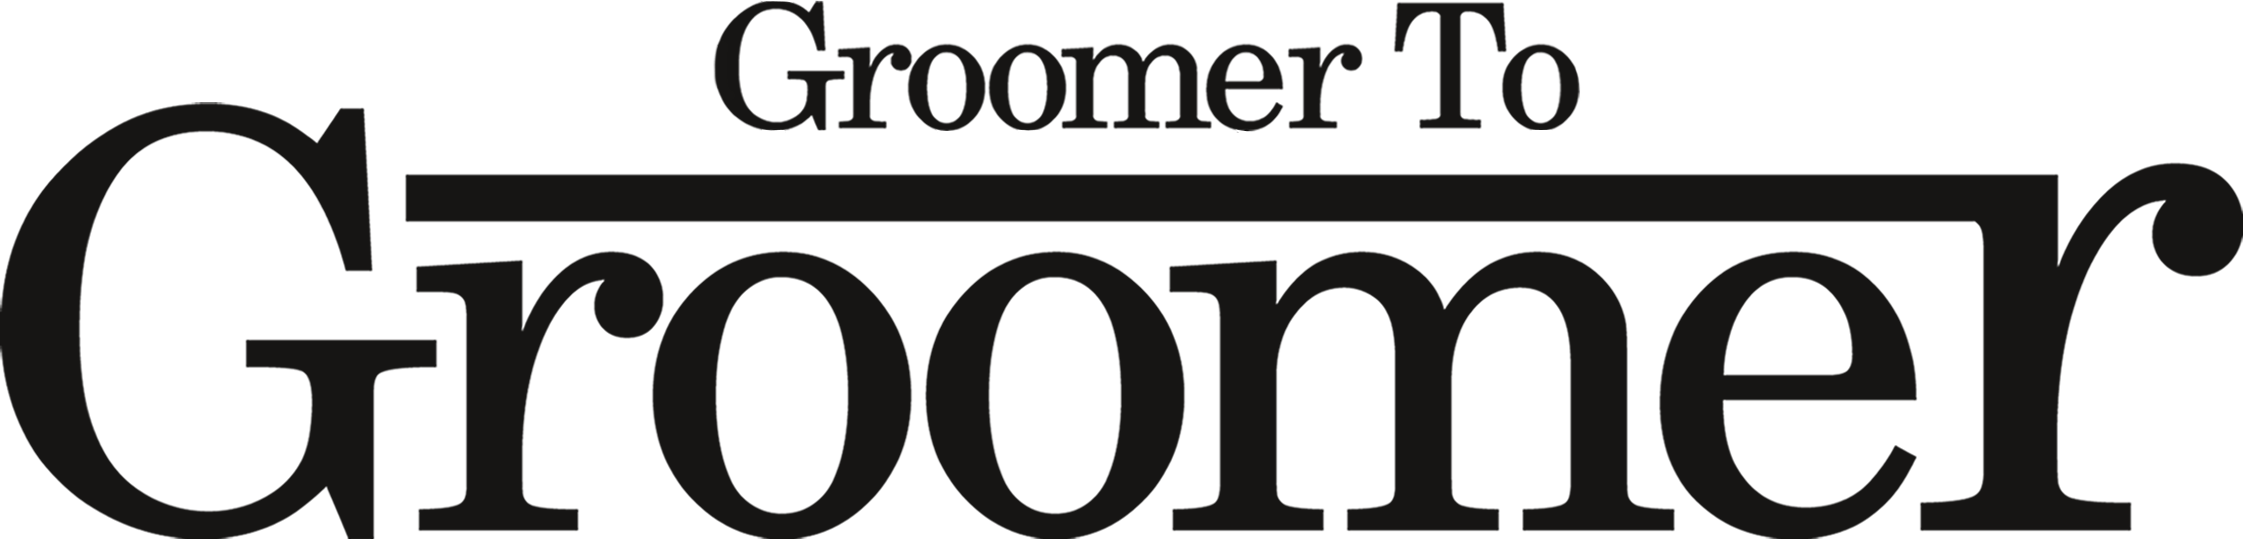 Groomer to Groomer logo black